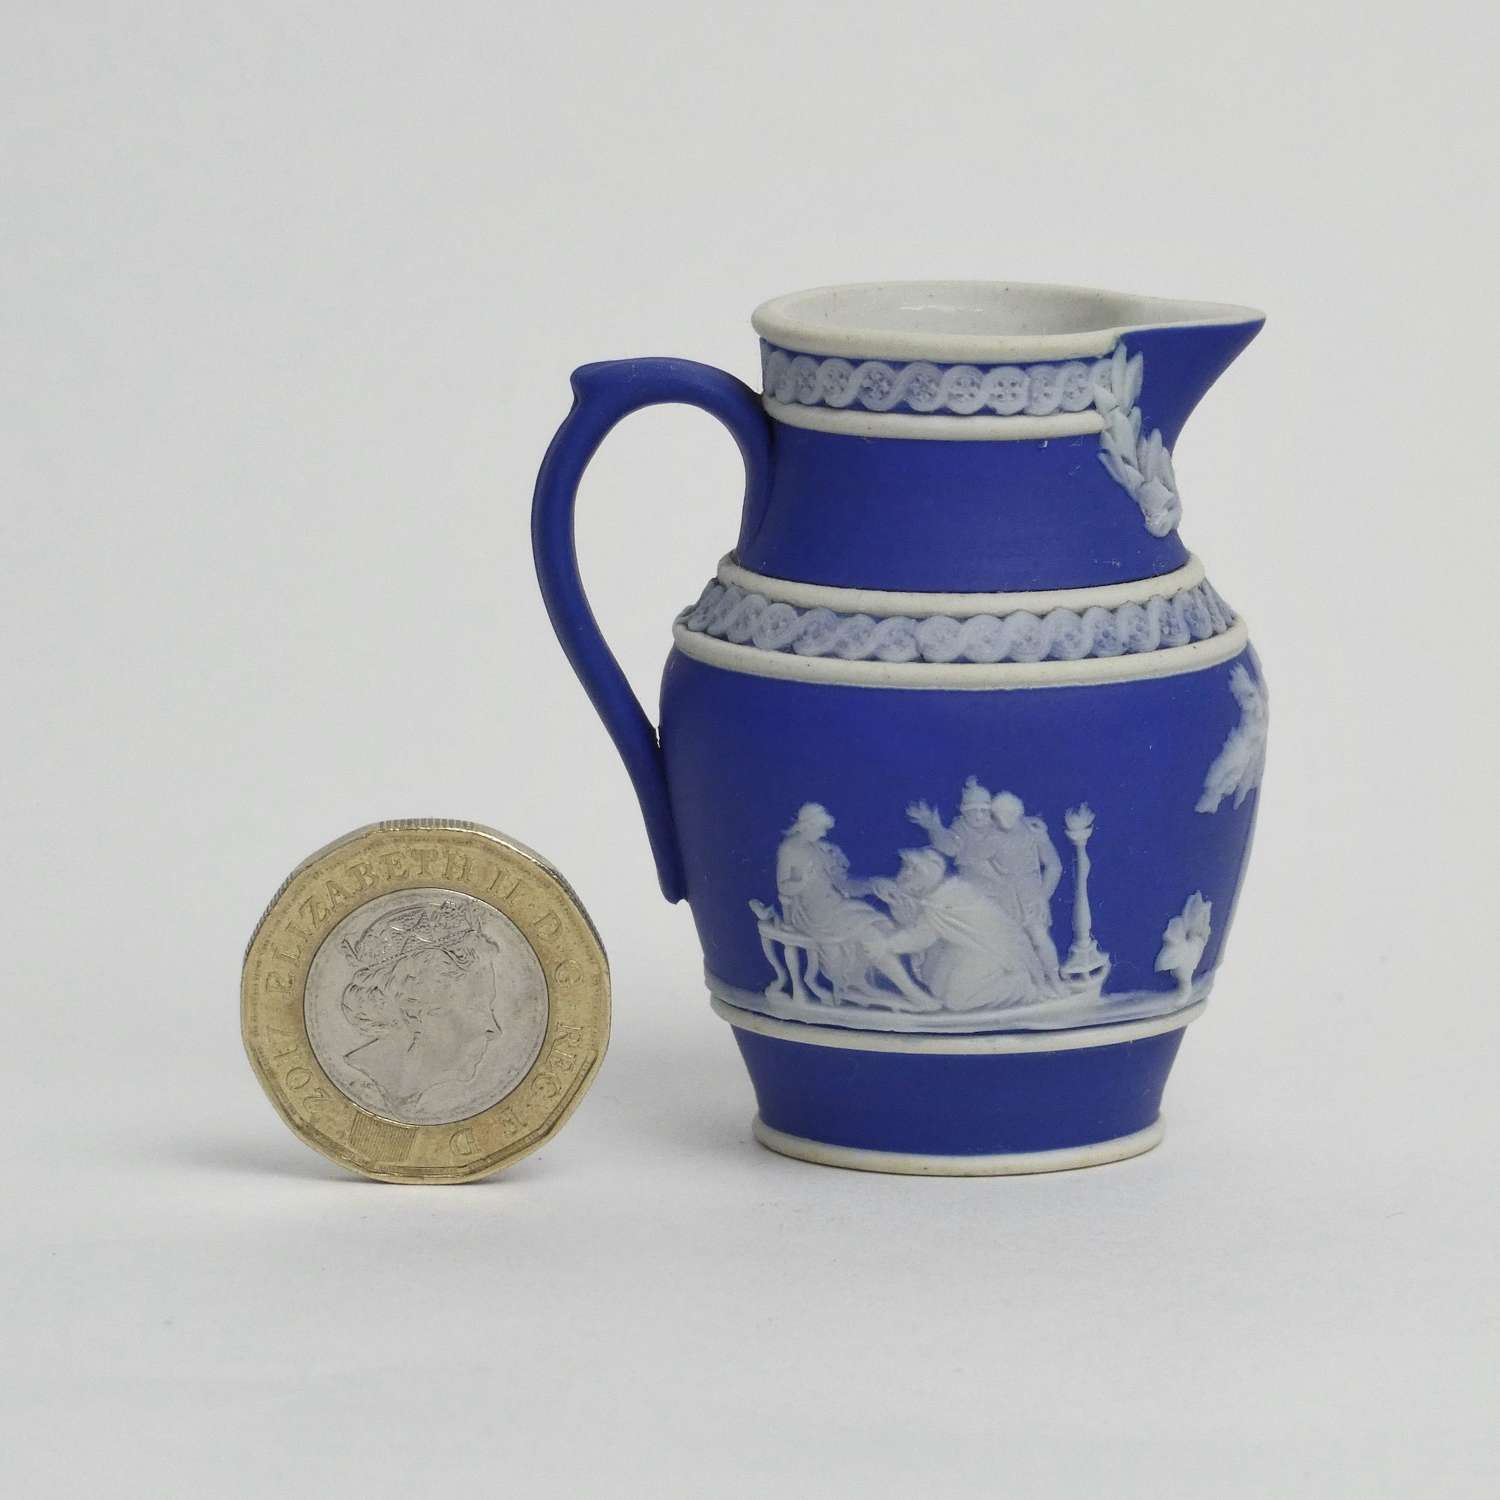 Miniature Wedgwood jug